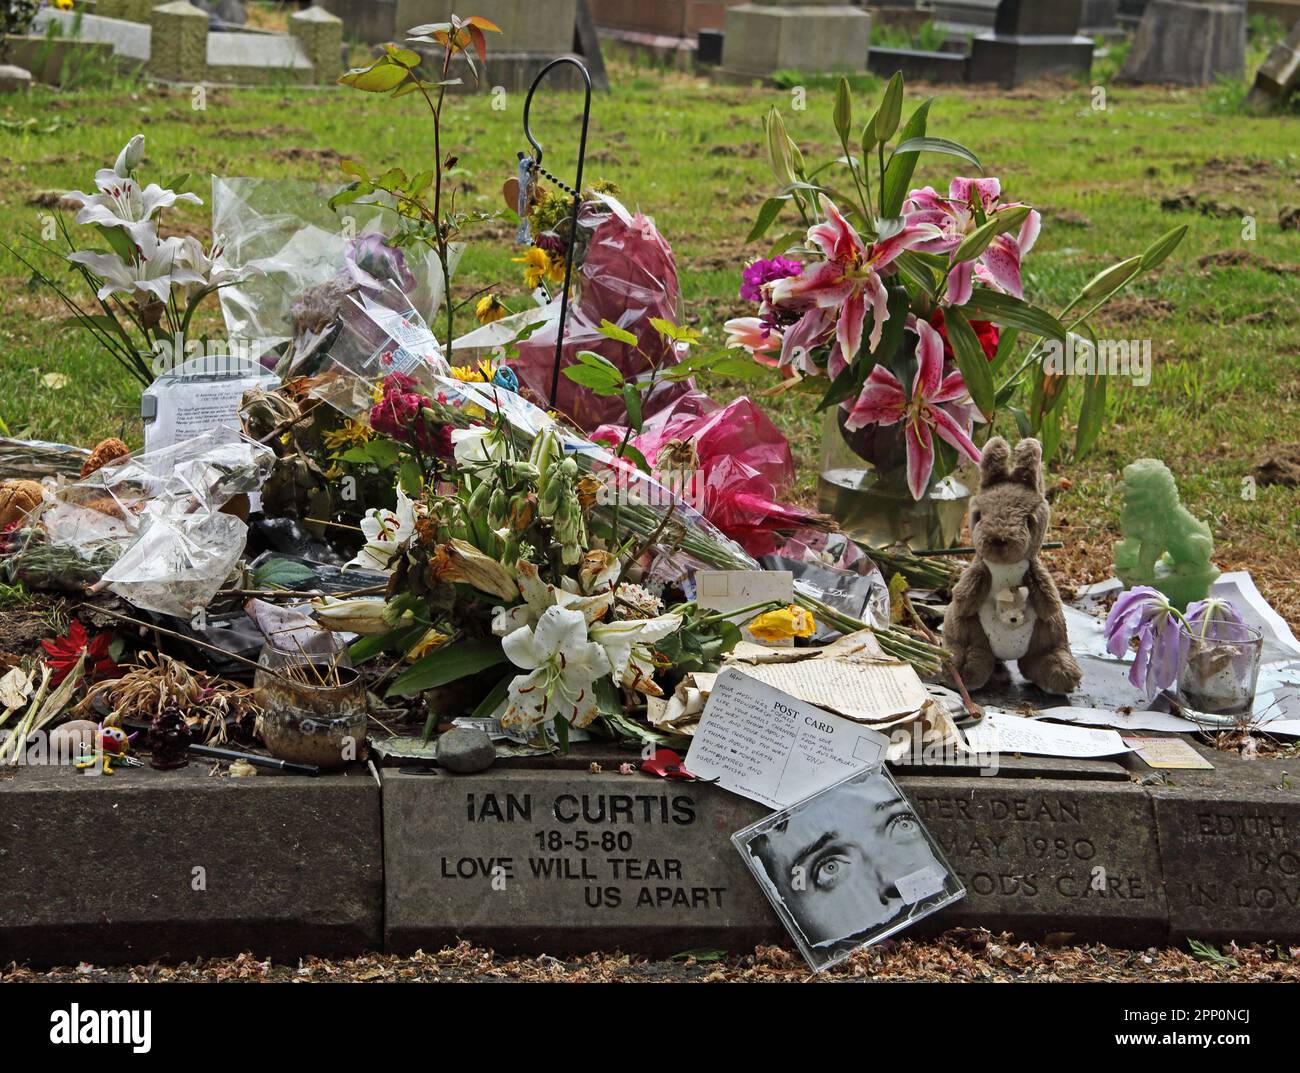 Ian Curtis 18-5-80 l'amour nous déchirera, pierre commémorative, crématorium de Macclesfield, Cheshire, Angleterre, ROYAUME-UNI Banque D'Images